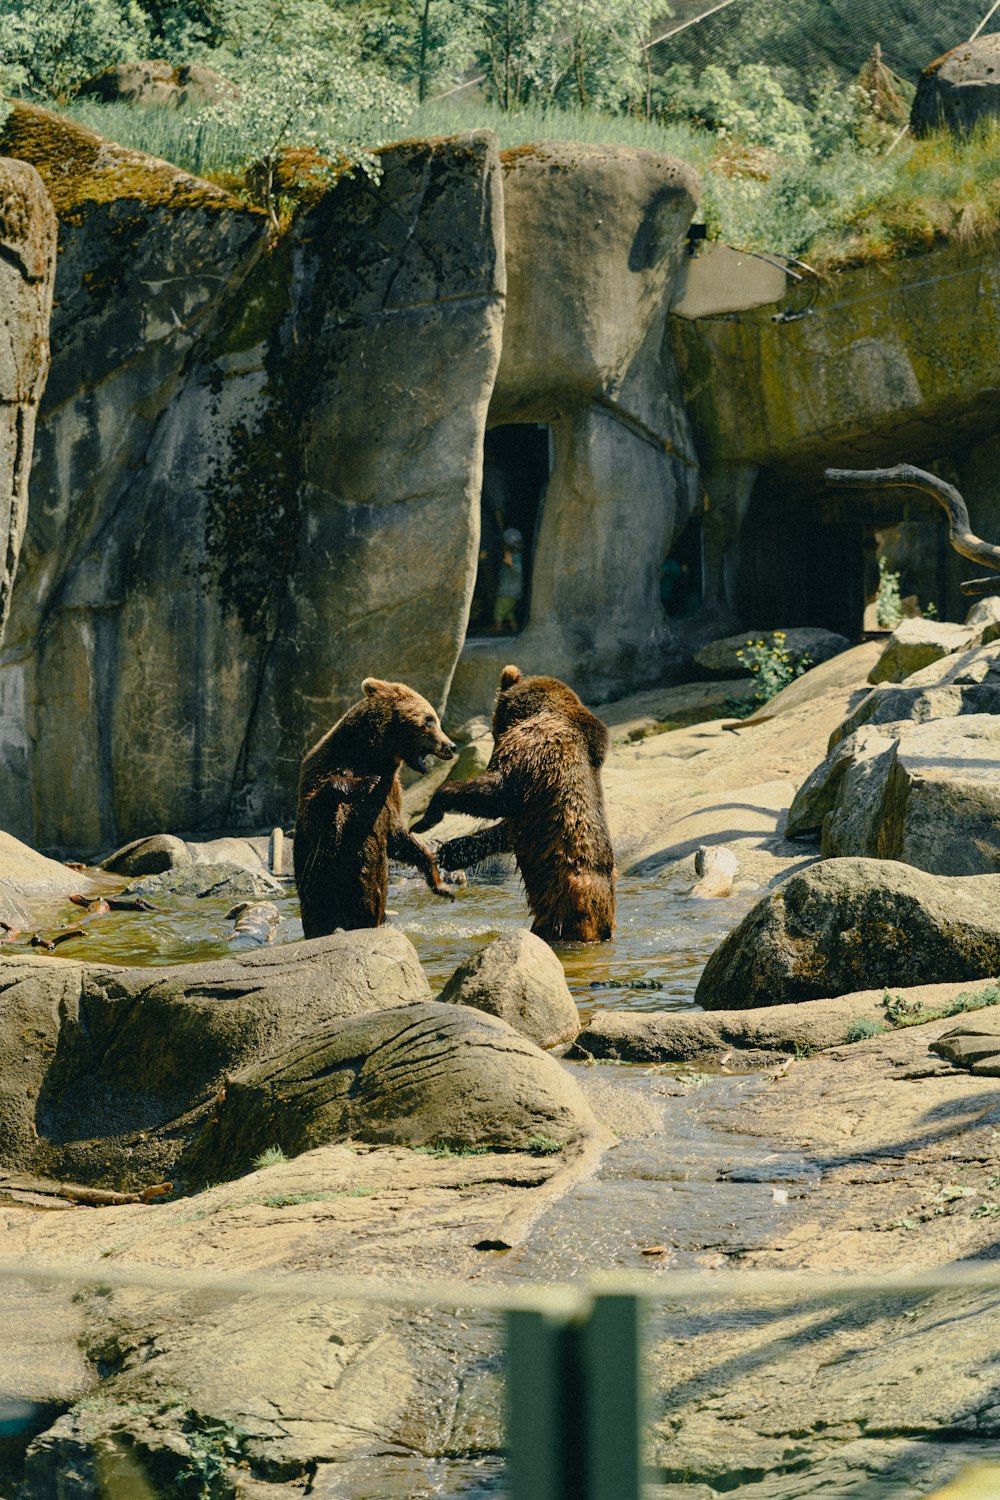 바위 위에 서 있는 곰 두 마리